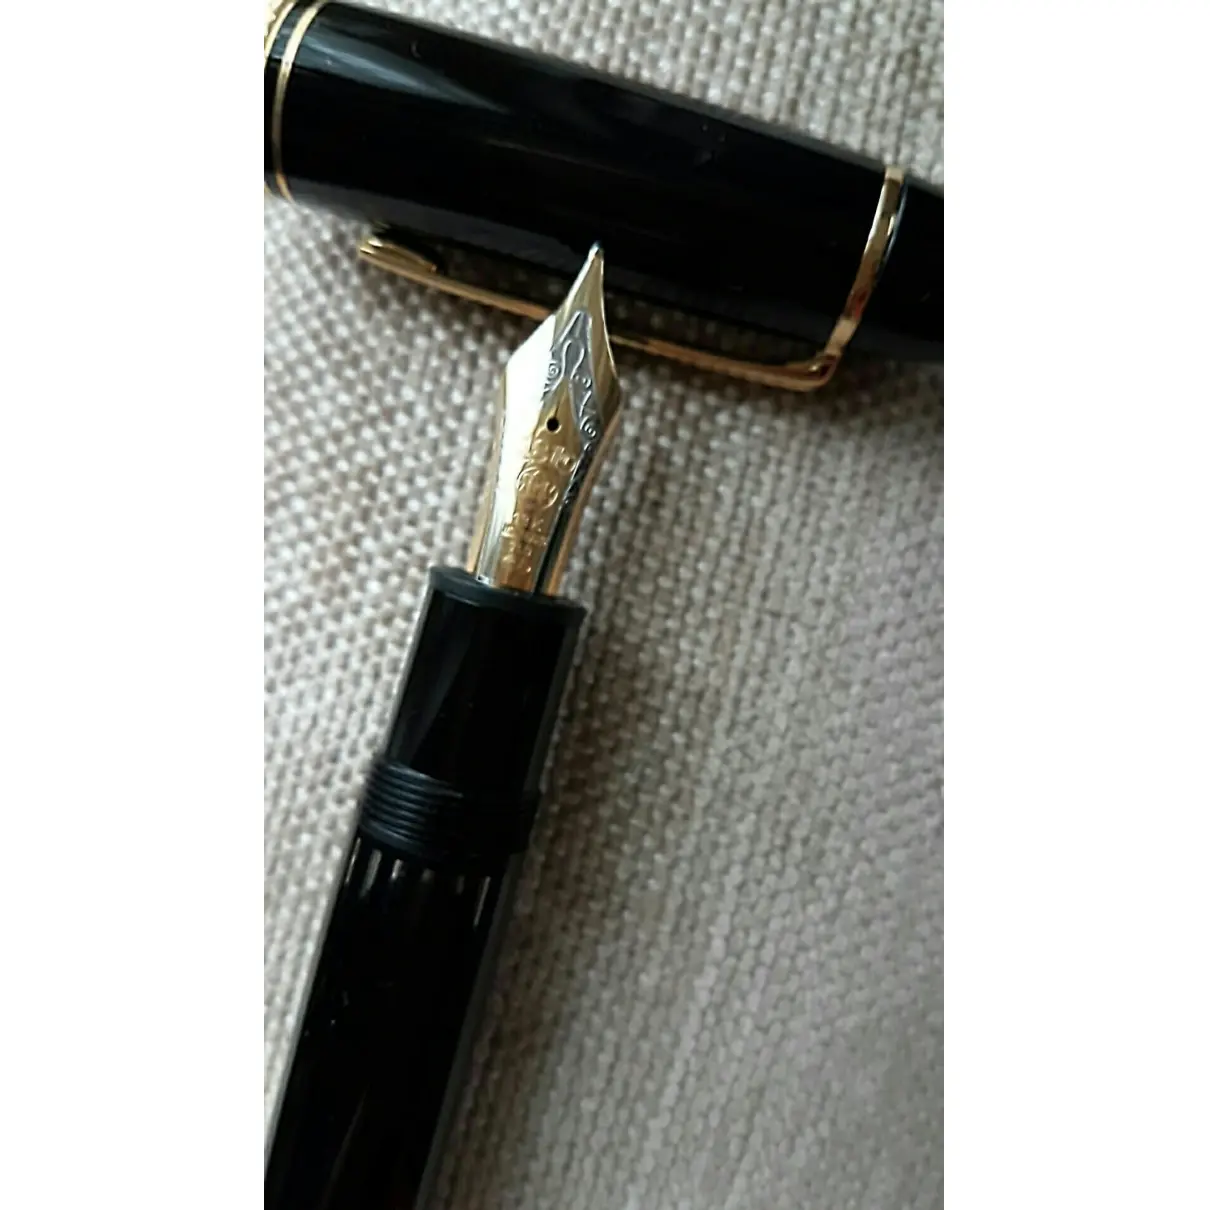 Meisterstück pen Montblanc - Vintage